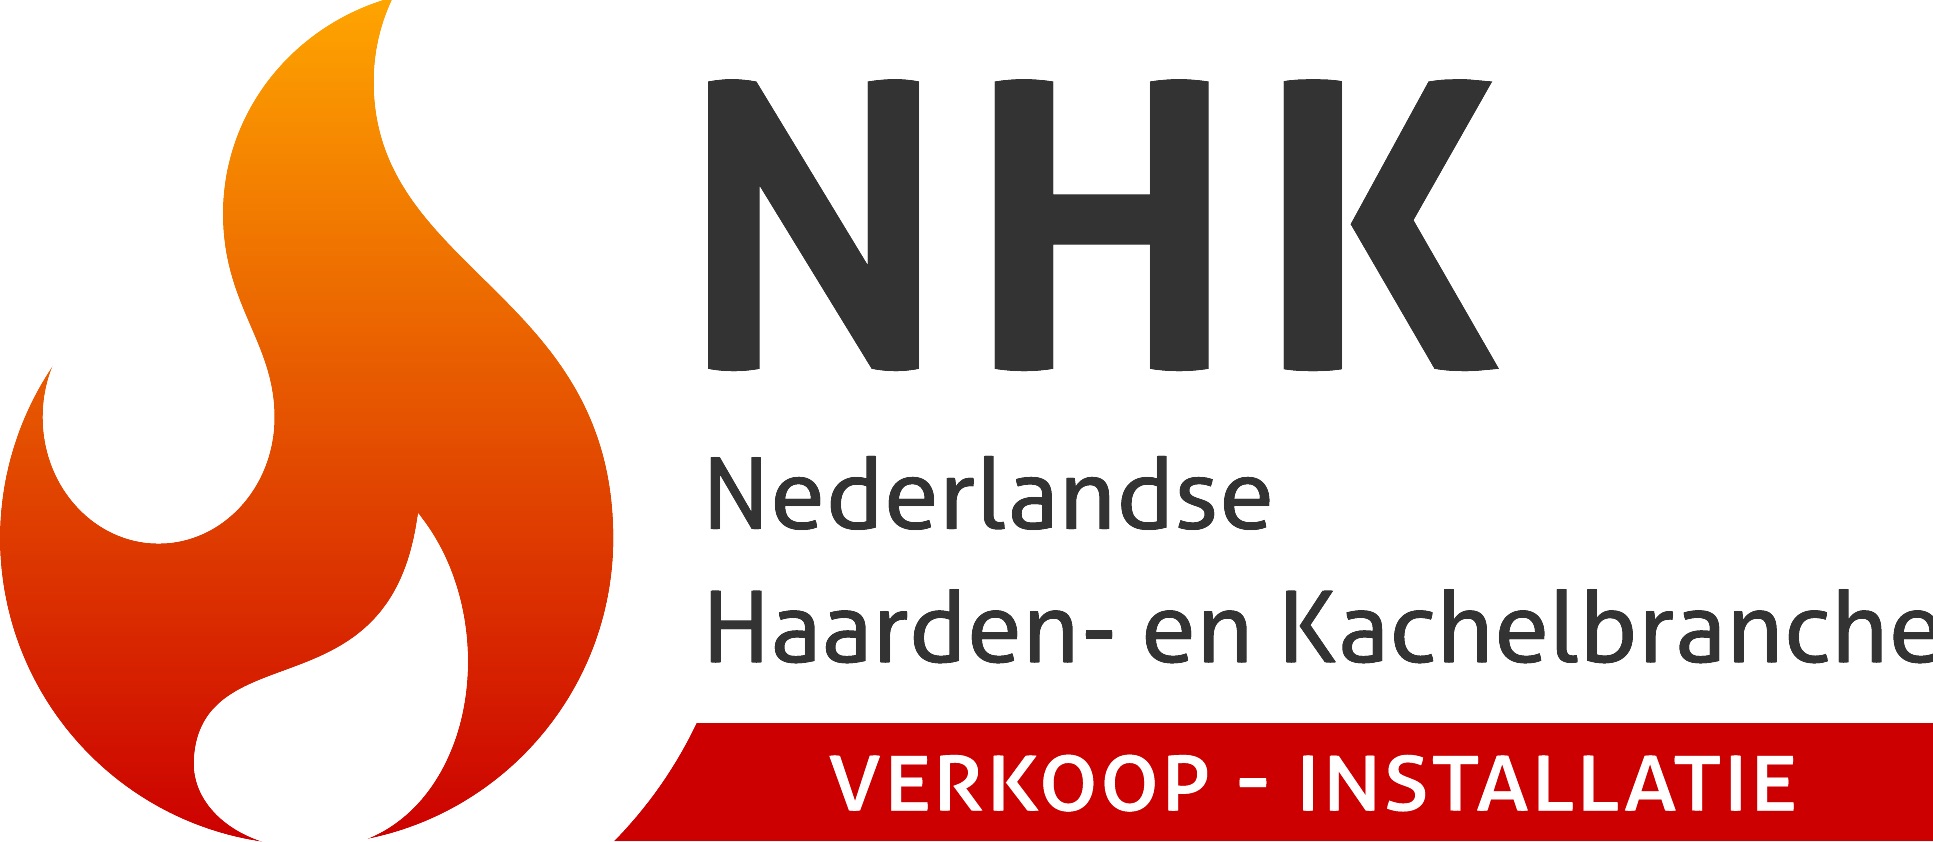 Nederlandse Haarden- en Kachelbranche verkoop-installatie NHK #haarden #kachels #installatie